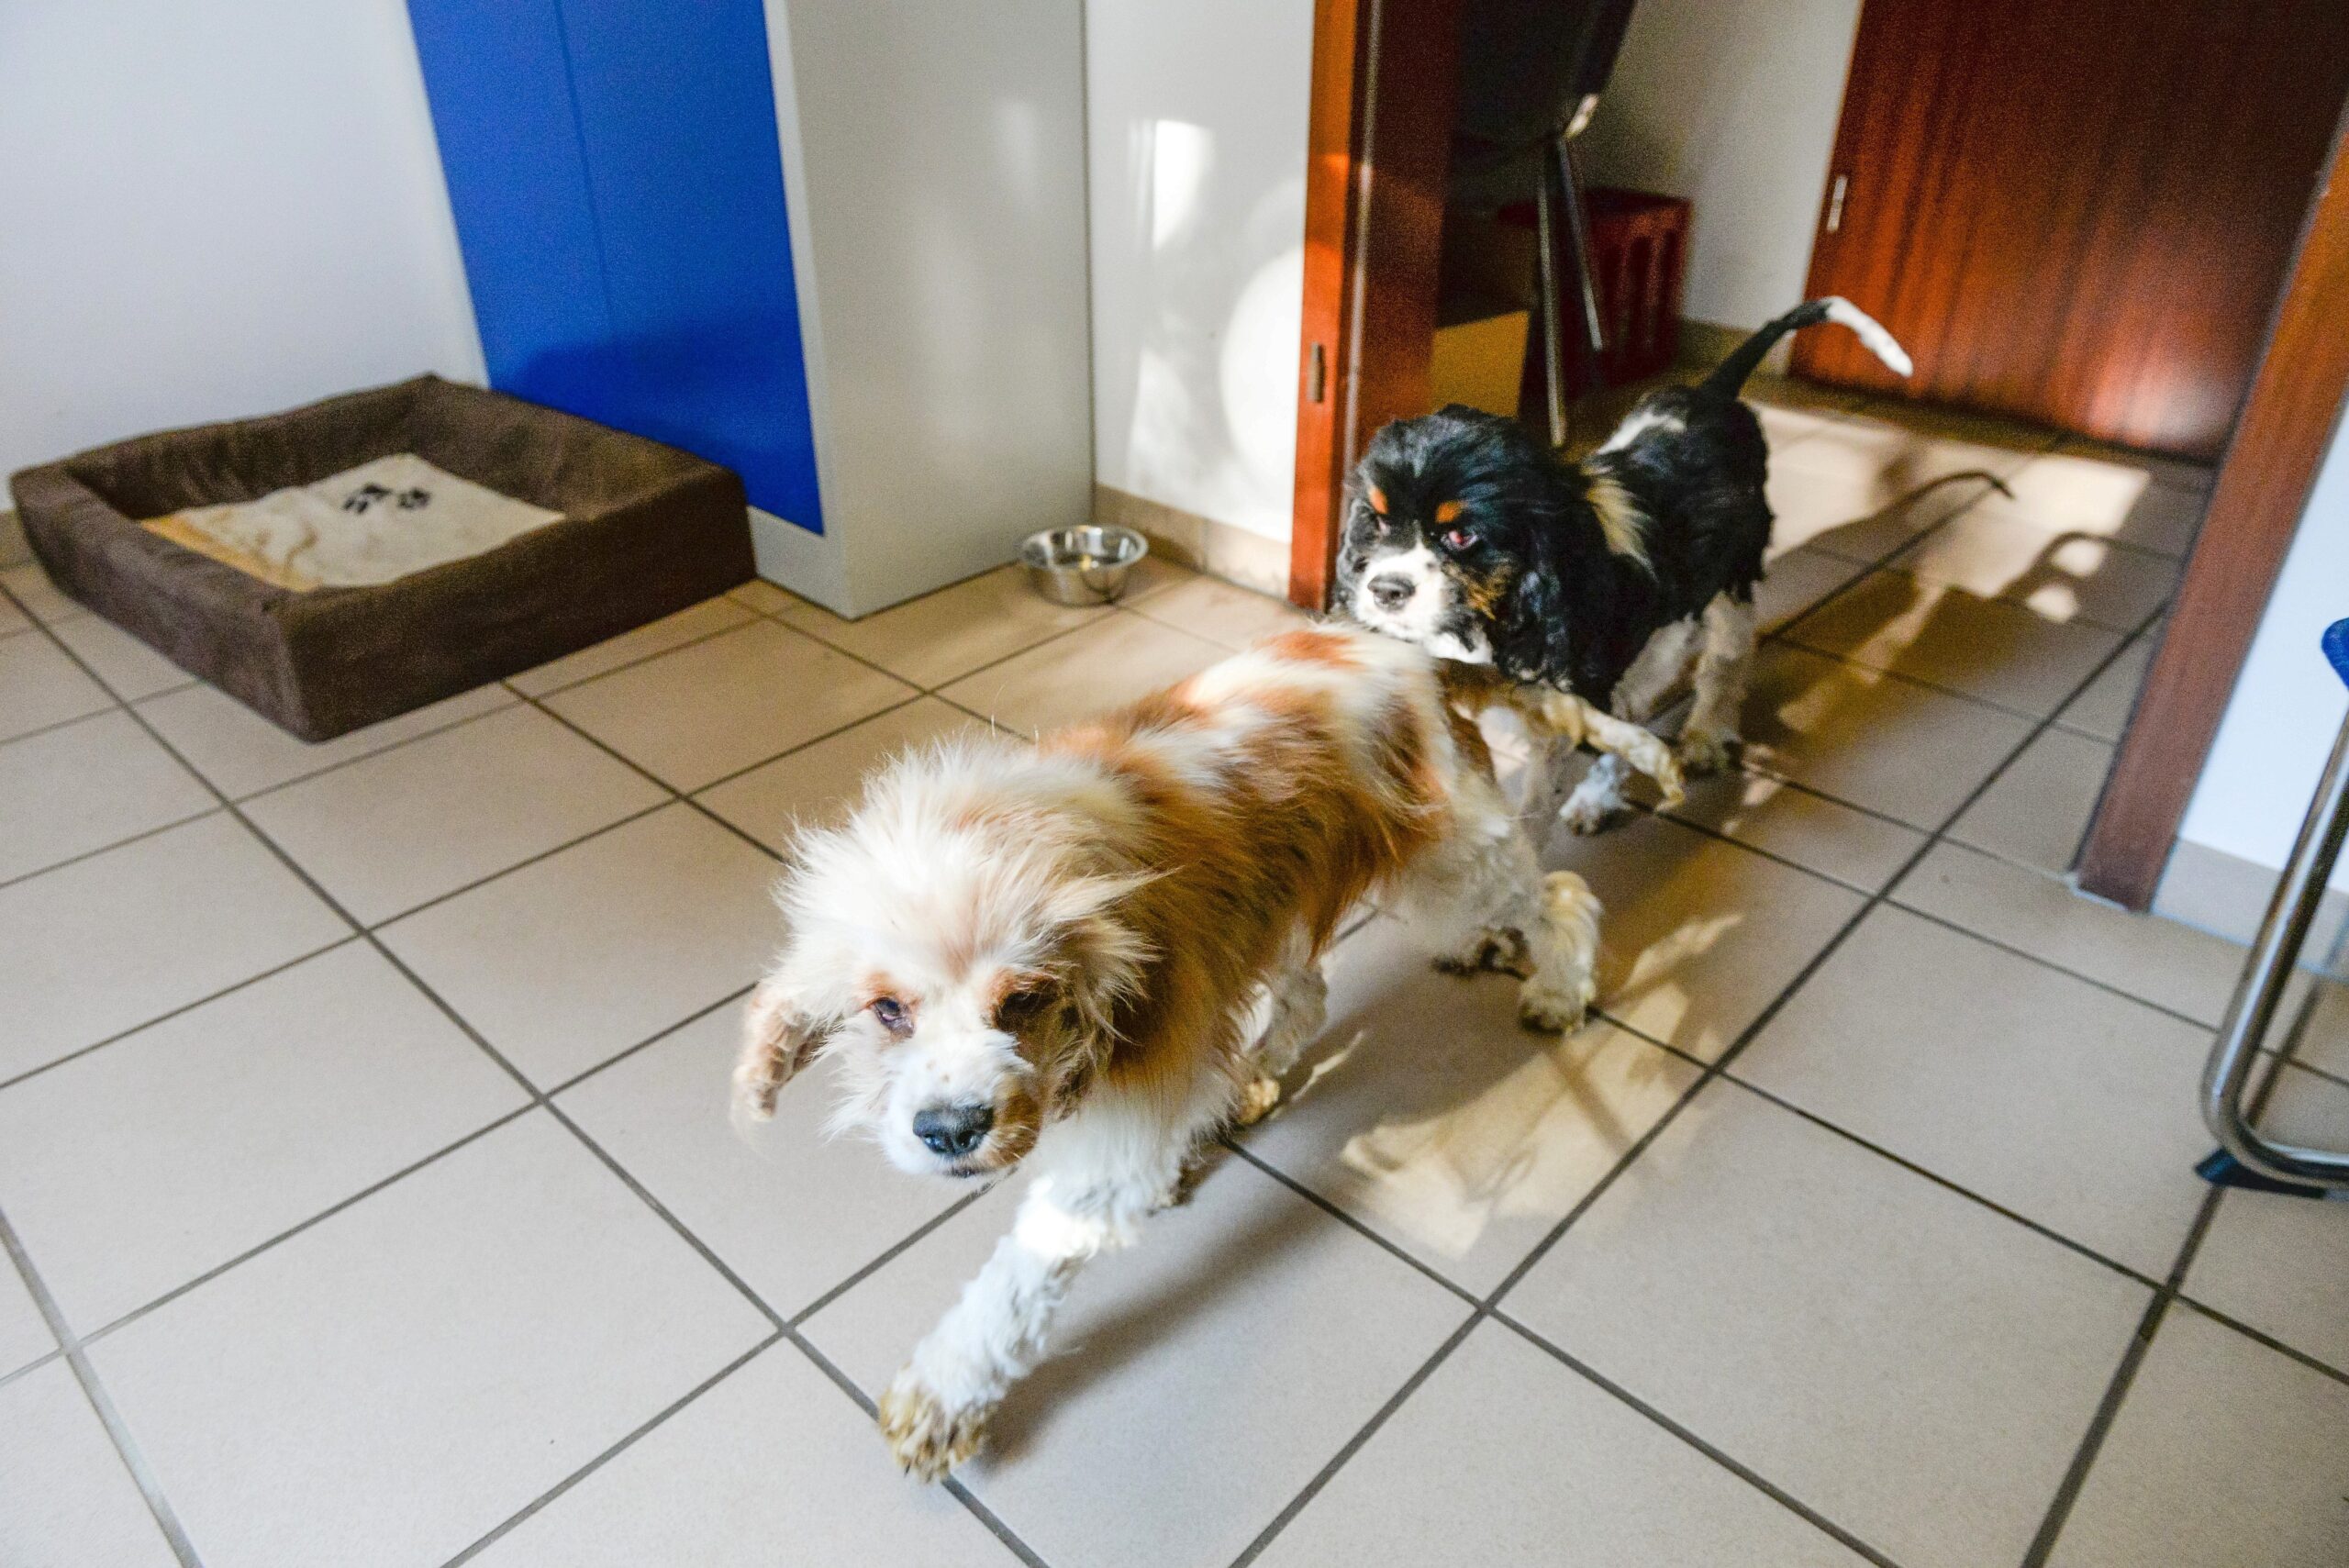 Im Tierheim in Kamp-Lintfort. Mitarbeiterin Katharina Schoth kümmert sich um die verwahrlost gefundenen zwei Hunde von der Rasse Cavalier King Charles Spaniel.     Foto: Volker Herold / FUNKE Foto Services